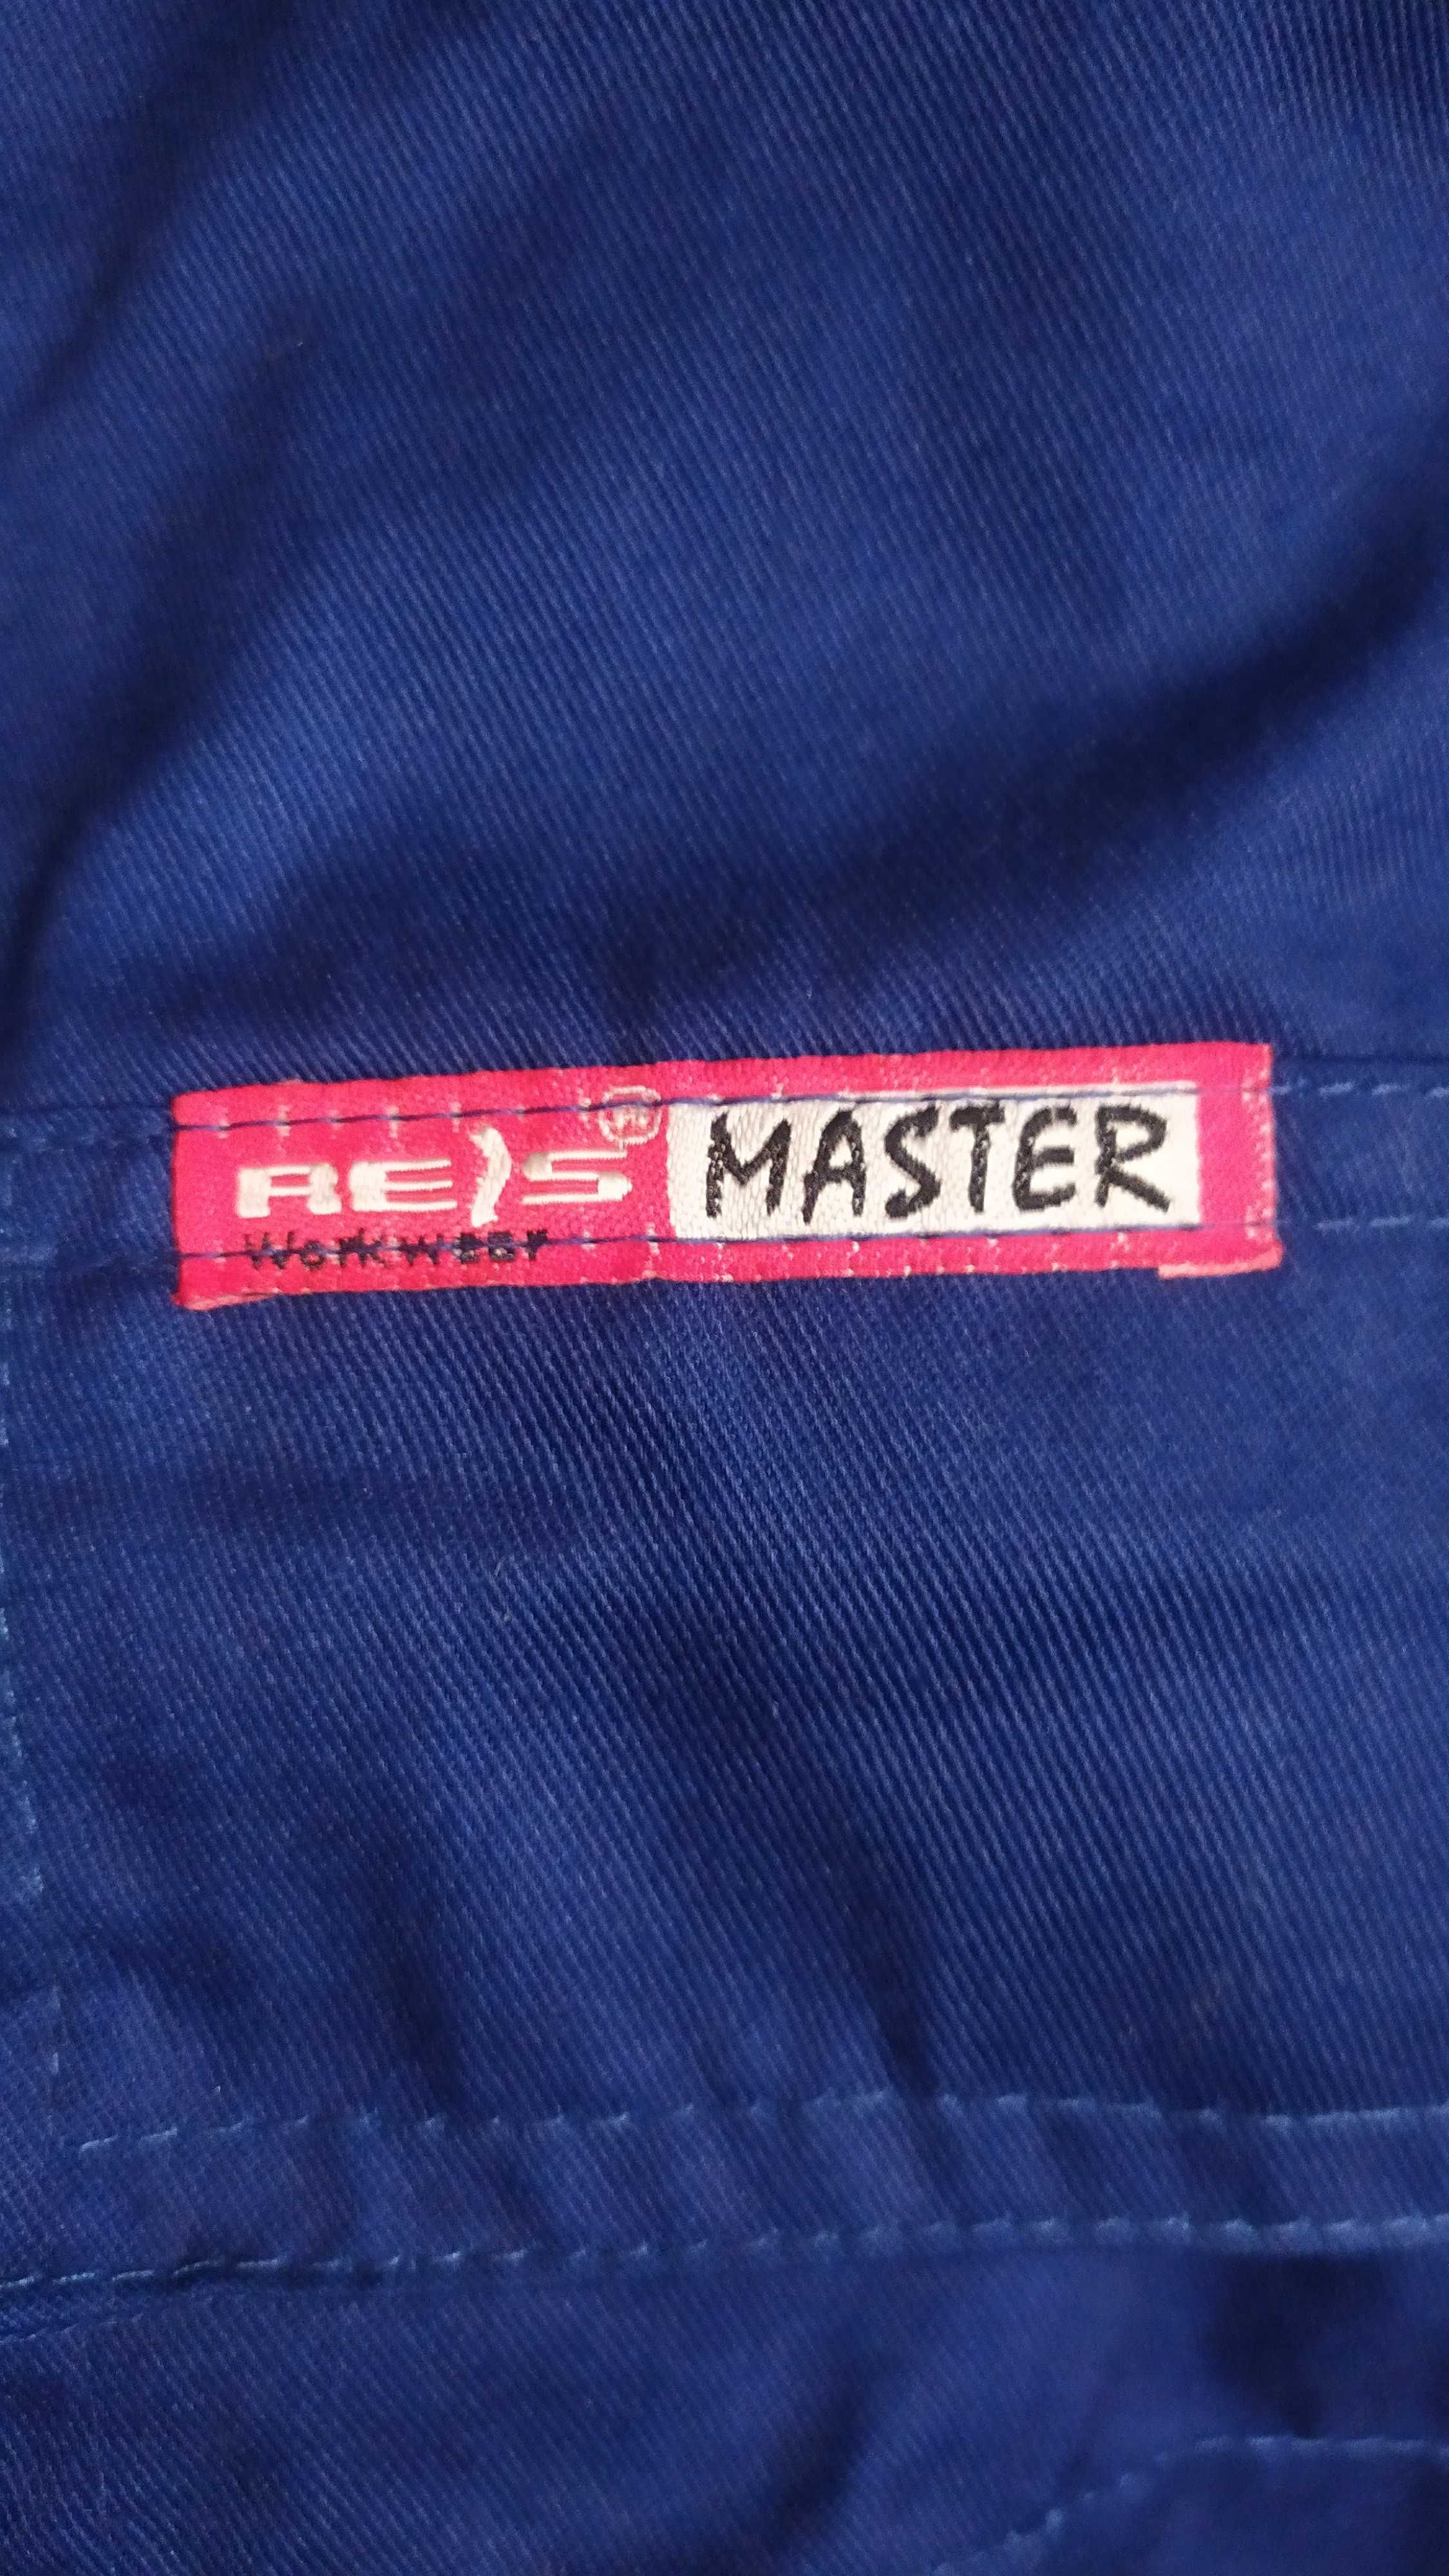 Ubranie robocze firmy Master rozm 170 nowe bluza kurtka S M